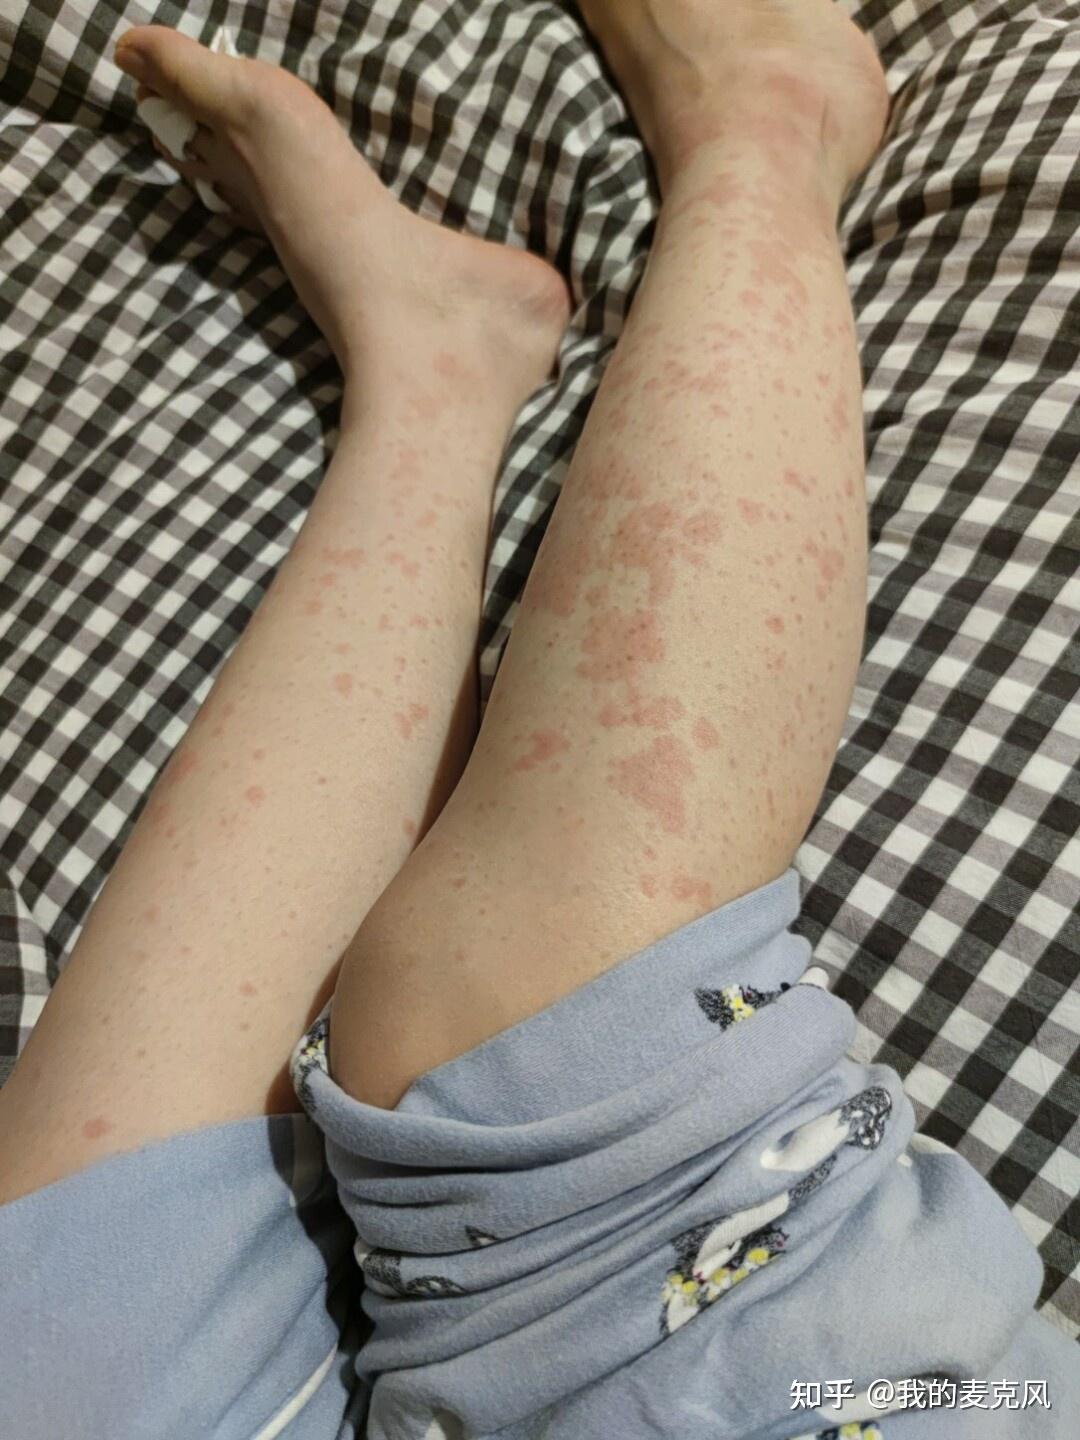 湿疹会传染吗? 